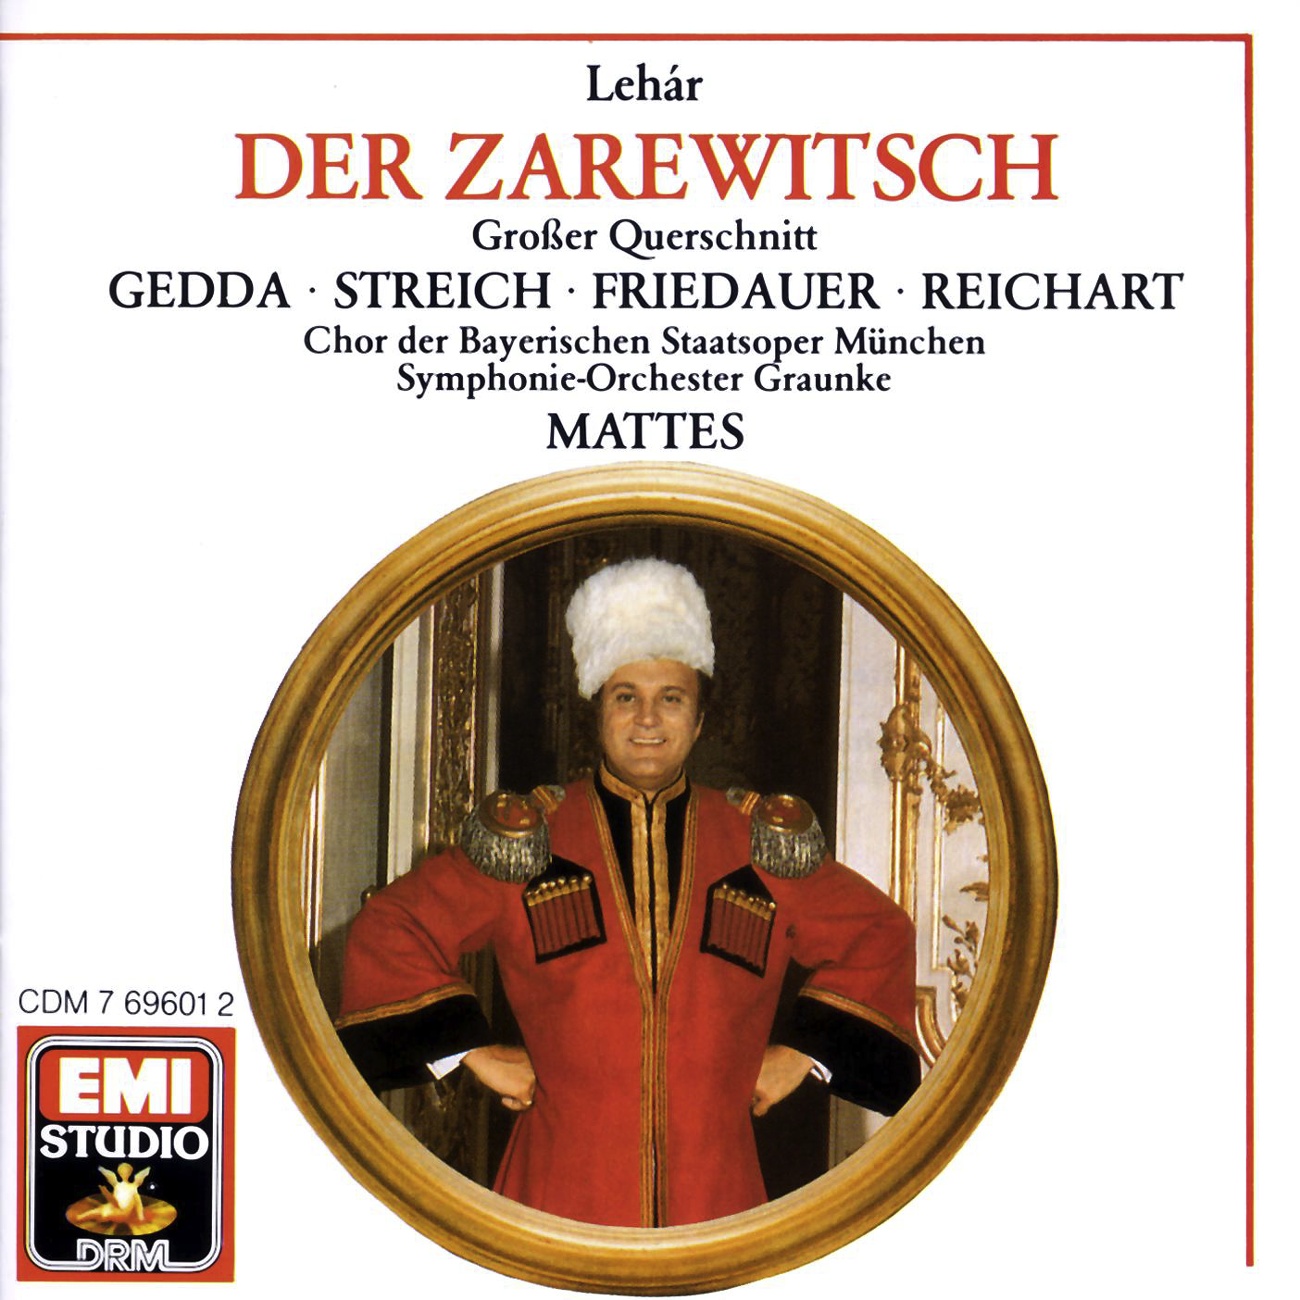 Der Zarewitsch  Highlights 1988 Digital Remaster, Erster Akt: Einer wird kommen, der wird mich begehren Sonja